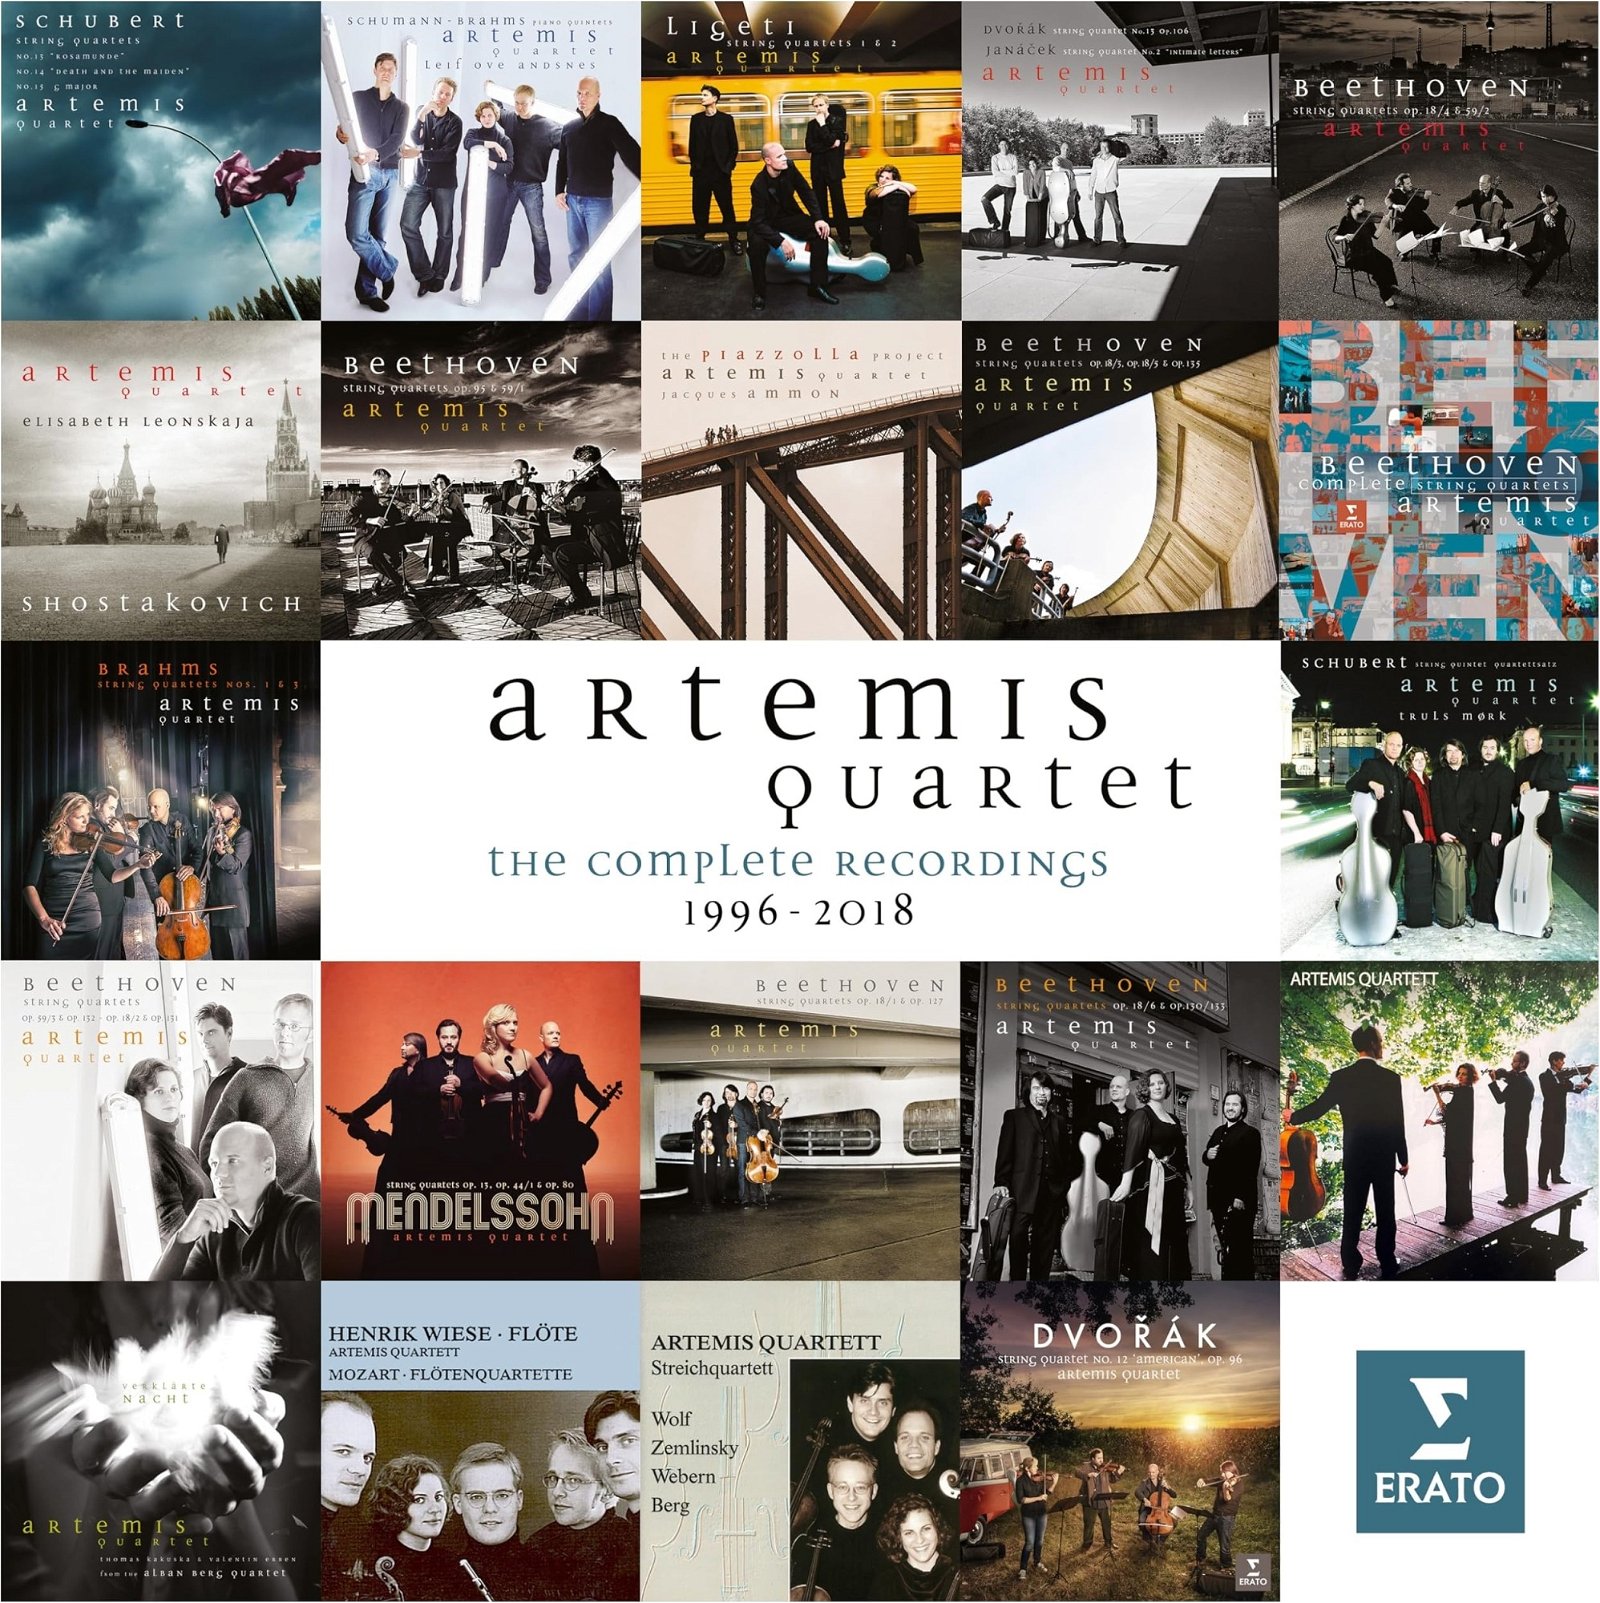 CD Shop - ARTEMIS QUARTET THE COMPLETE RECORDINGS 1996-2018